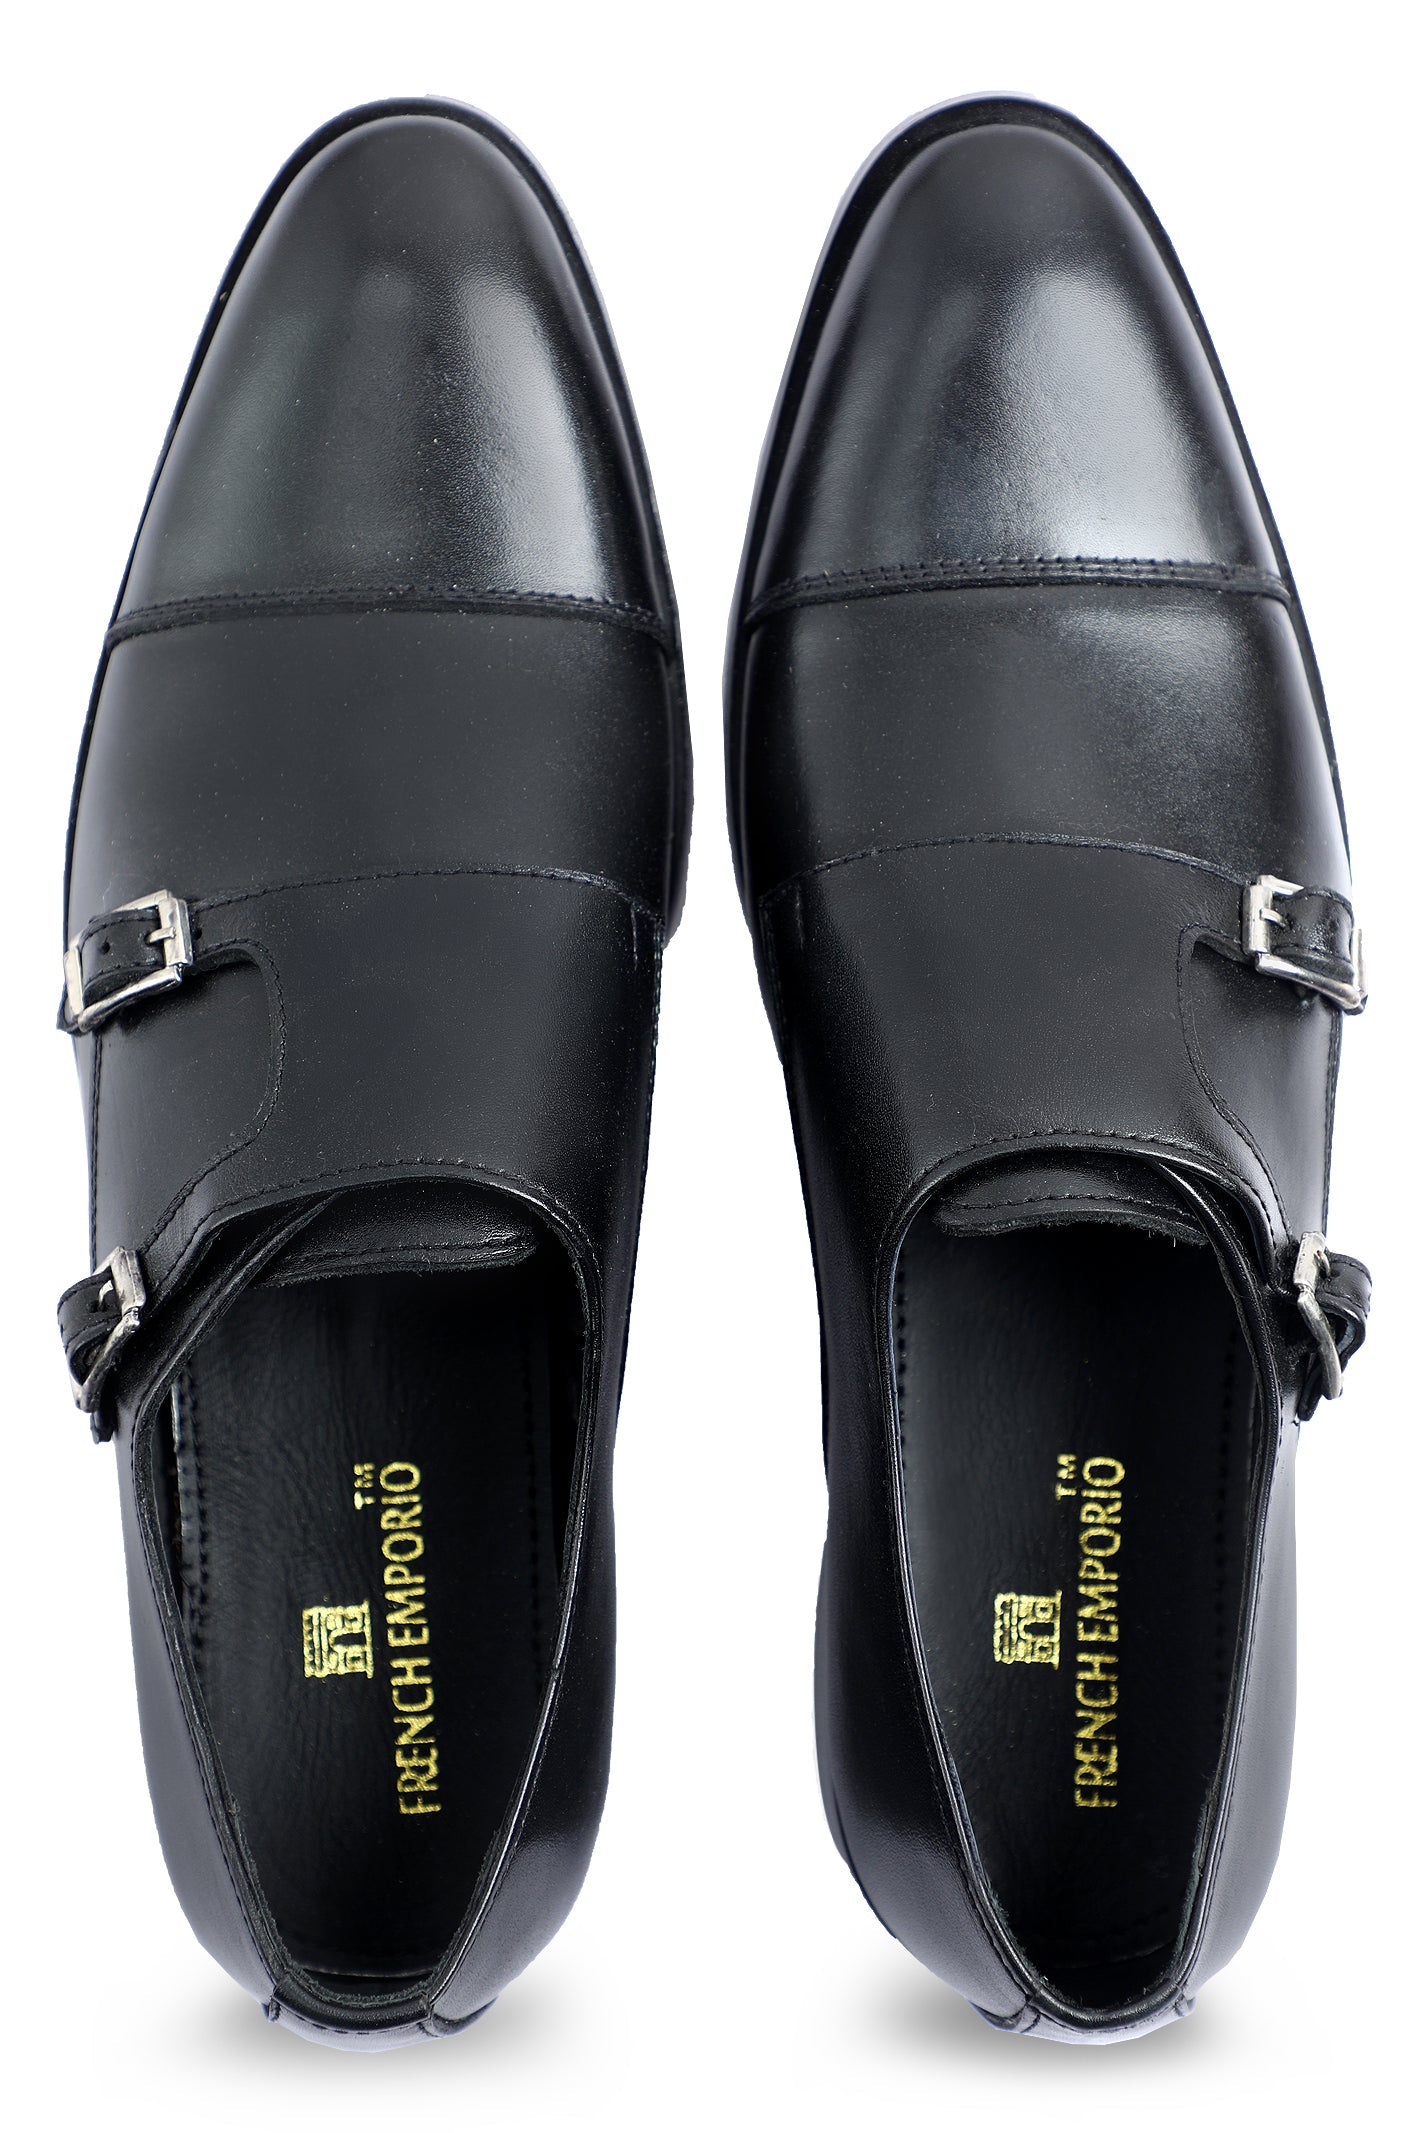 Formal Shoes For Men SKU: SMF-0255-BLACK - Diners